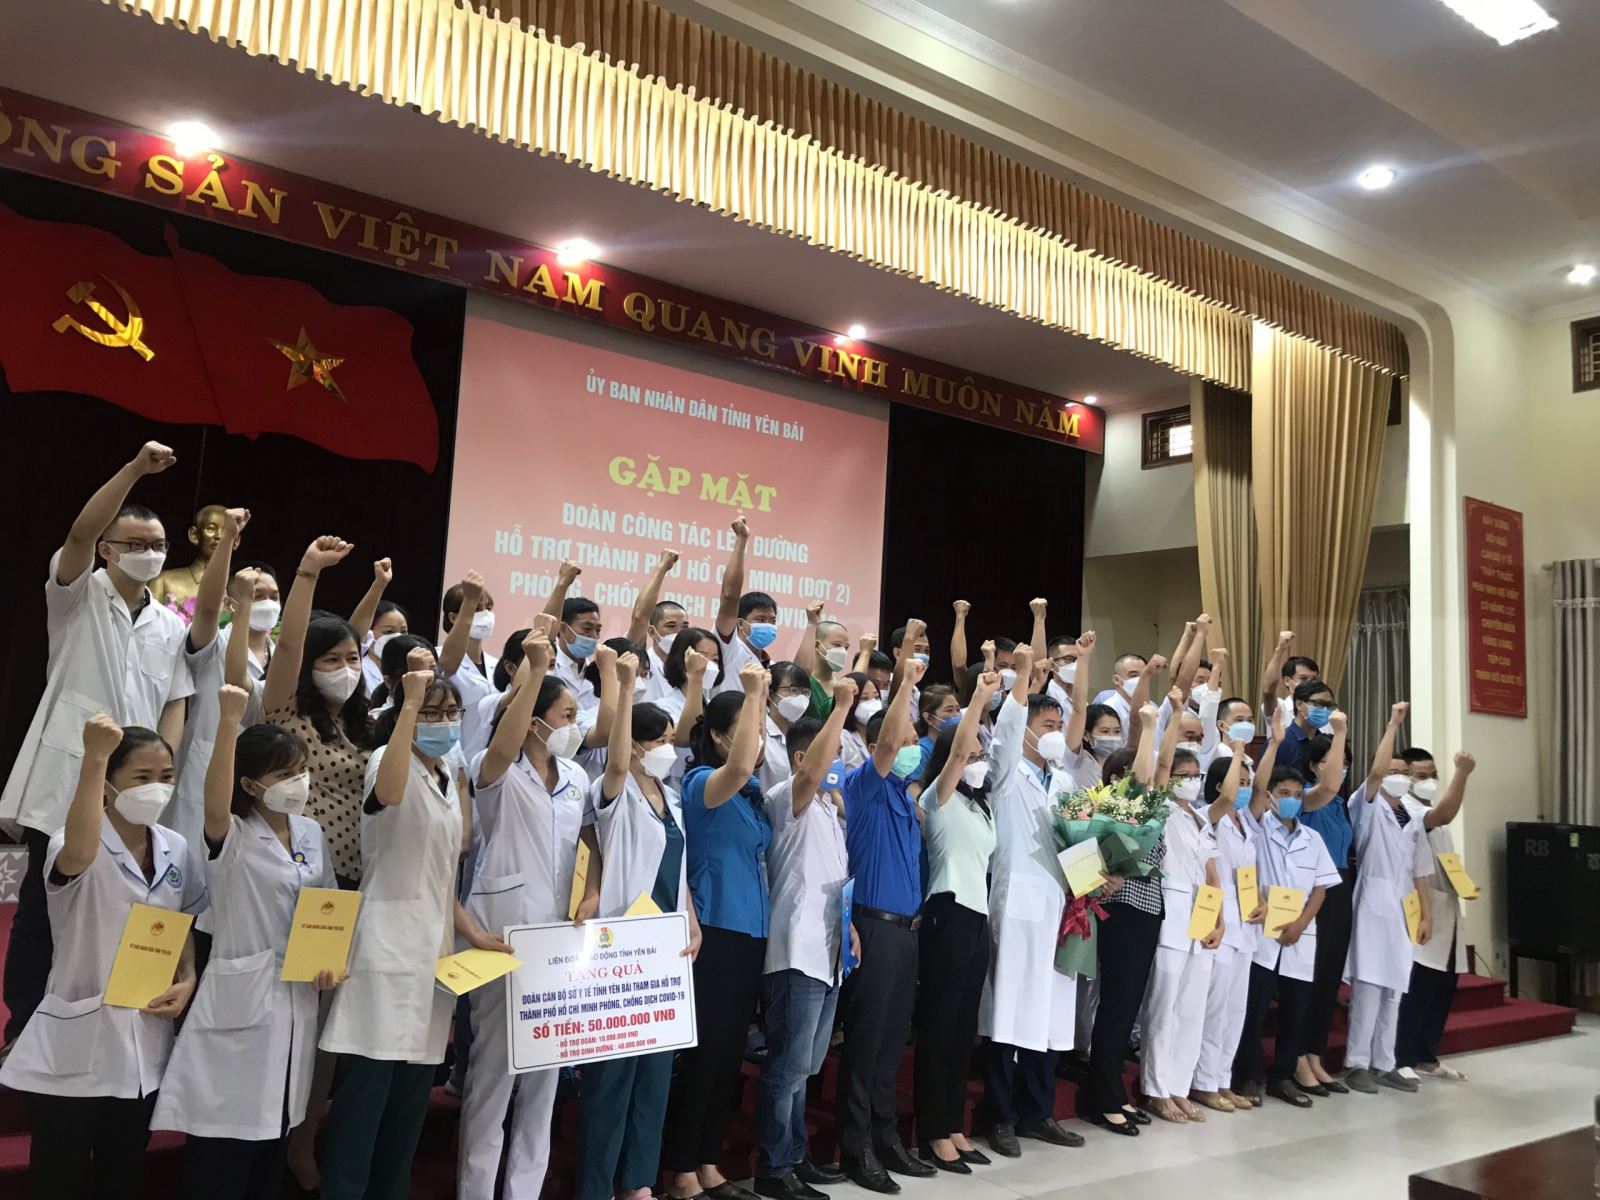 Thành phố Yên Bái tổ chức gặp mặt cán bộ y tế hỗ trợ Thành phố Hồ Chí Minh